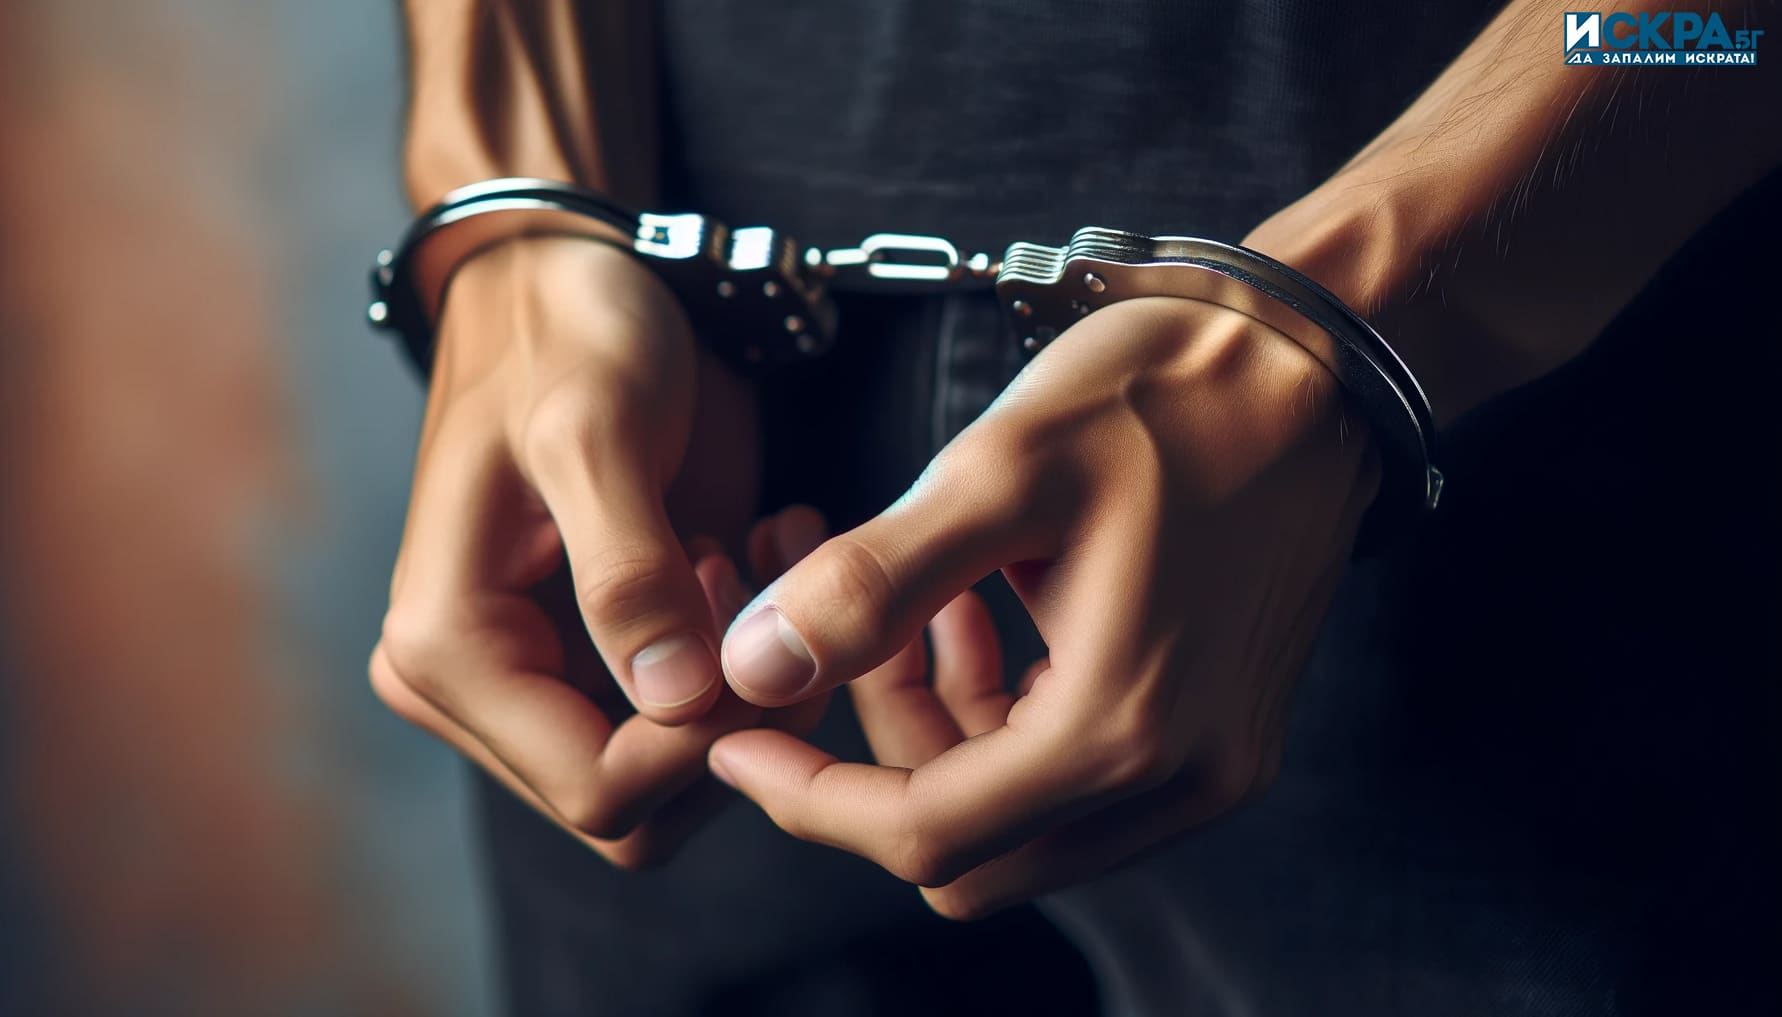 24 годишен криминално проявен и осъждан помориец с множество кражби